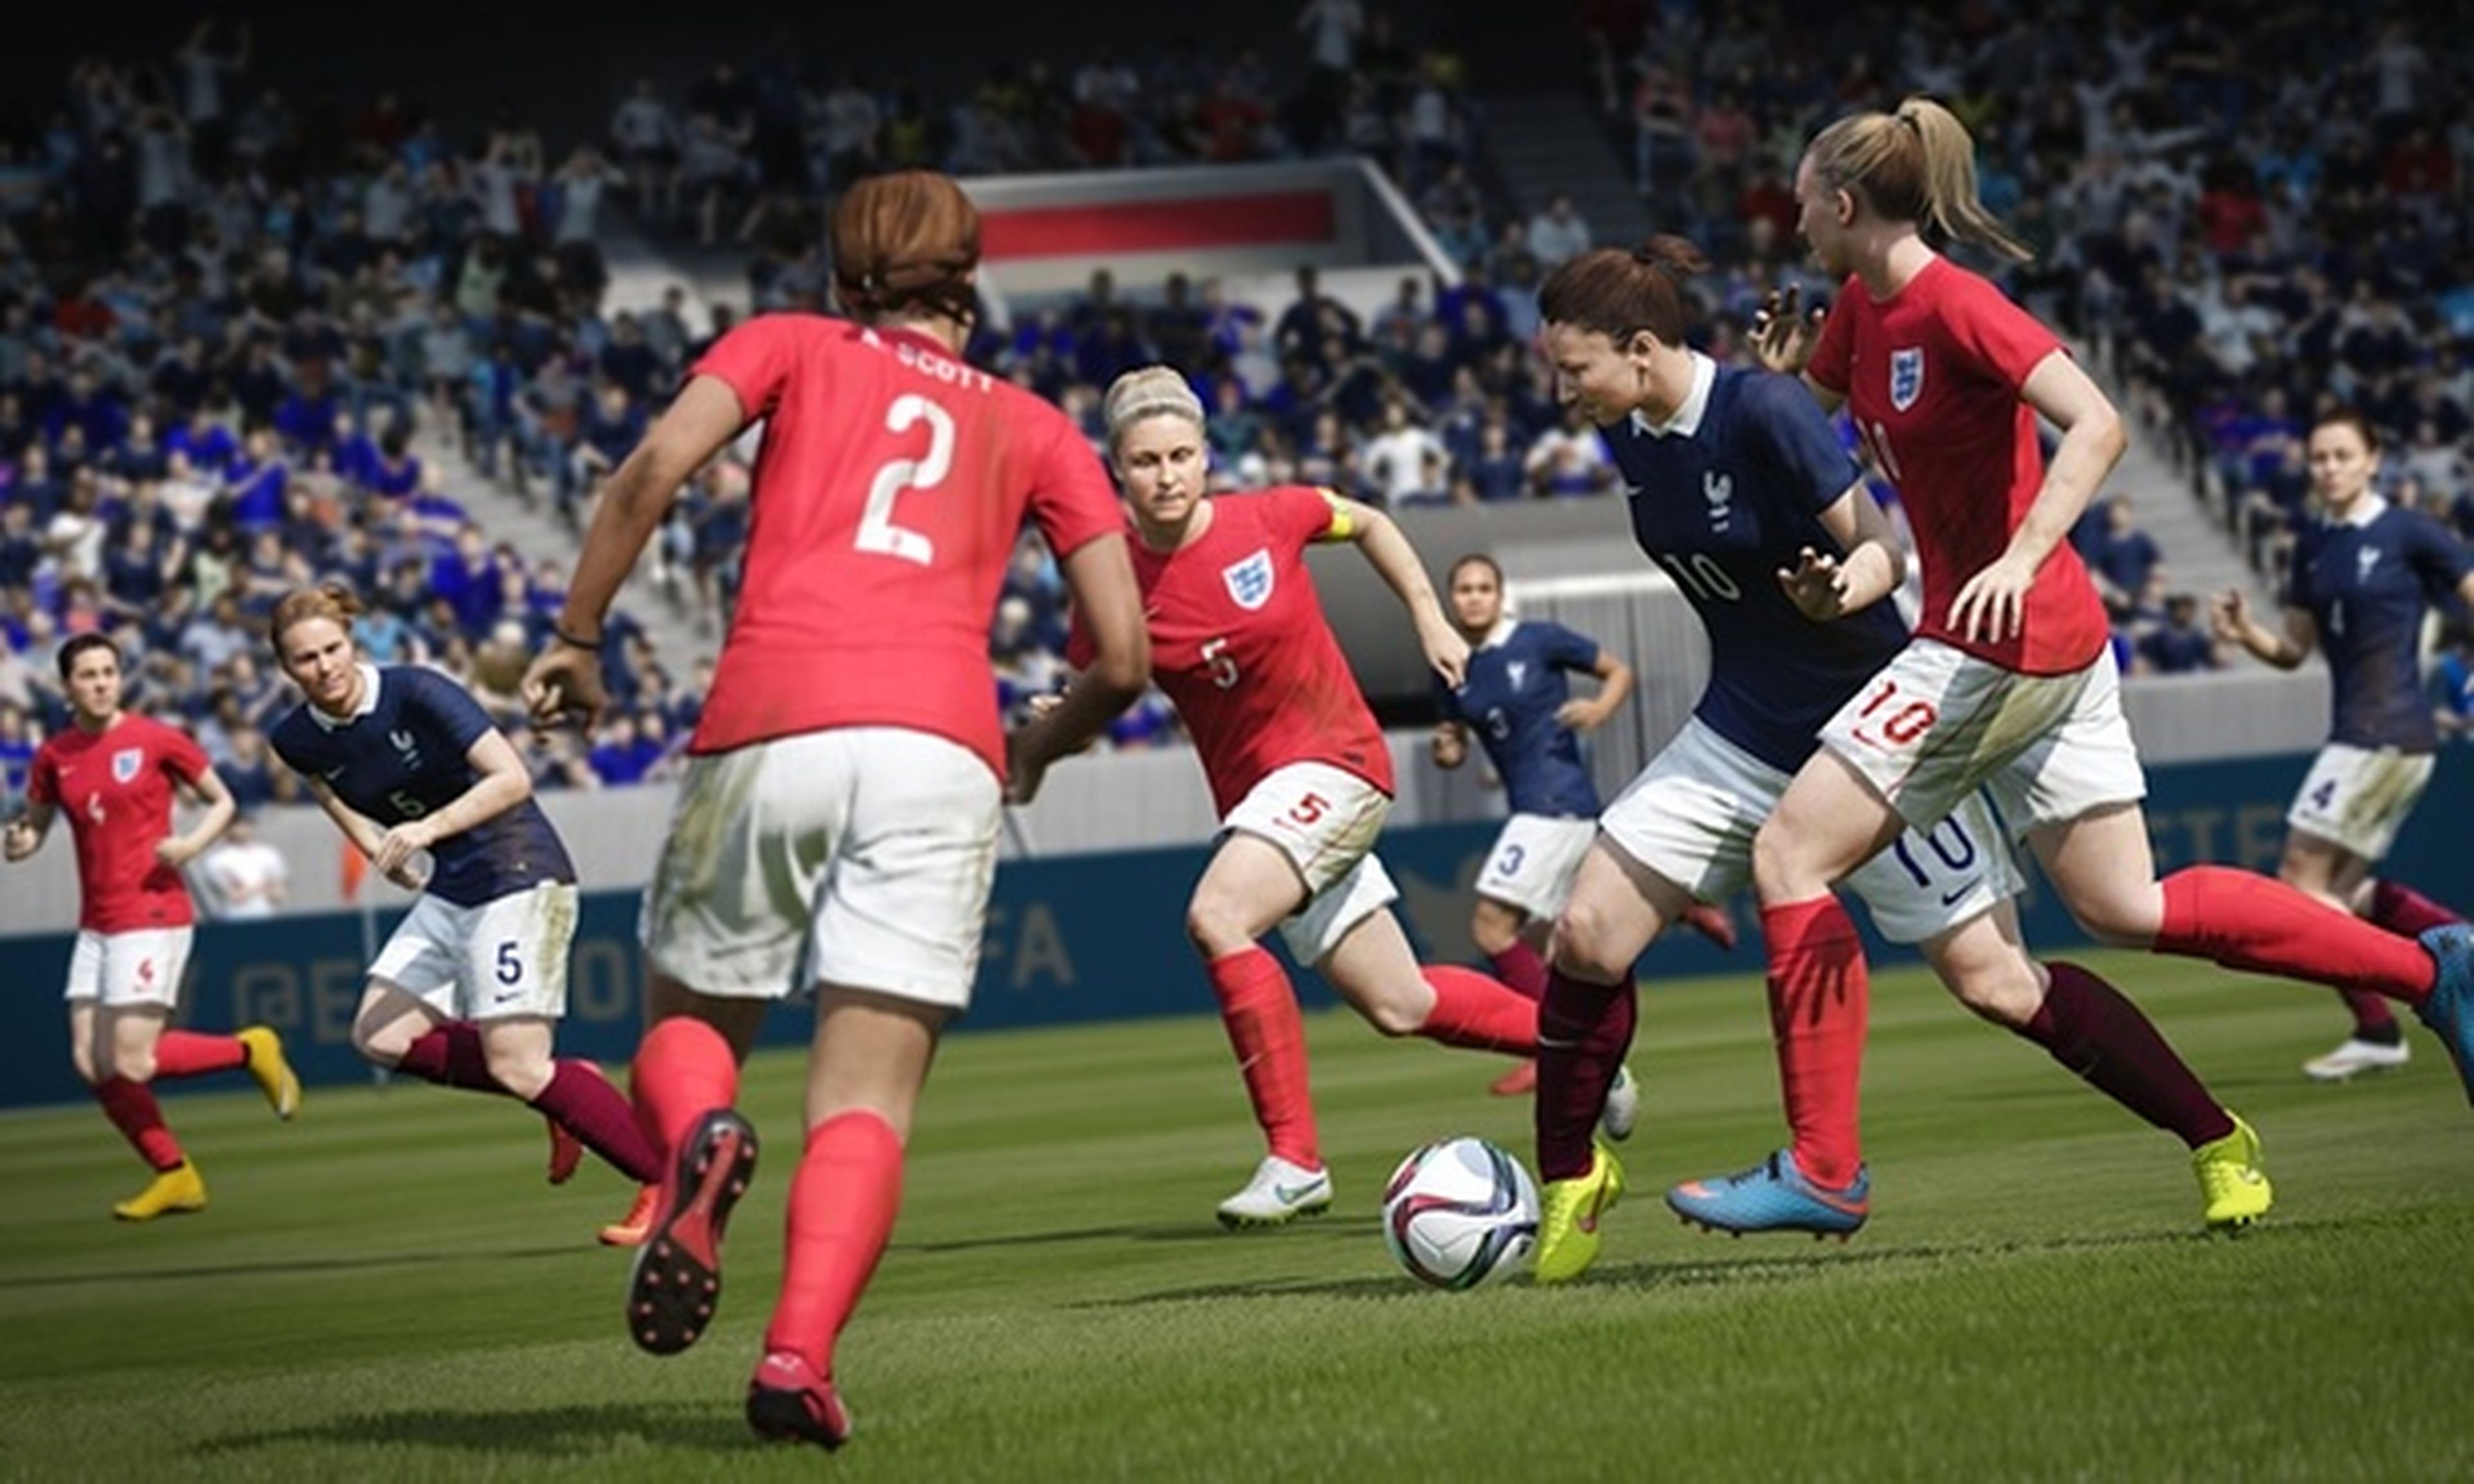 FIFA 16, acceso anticipado en EA Access para Xbox One